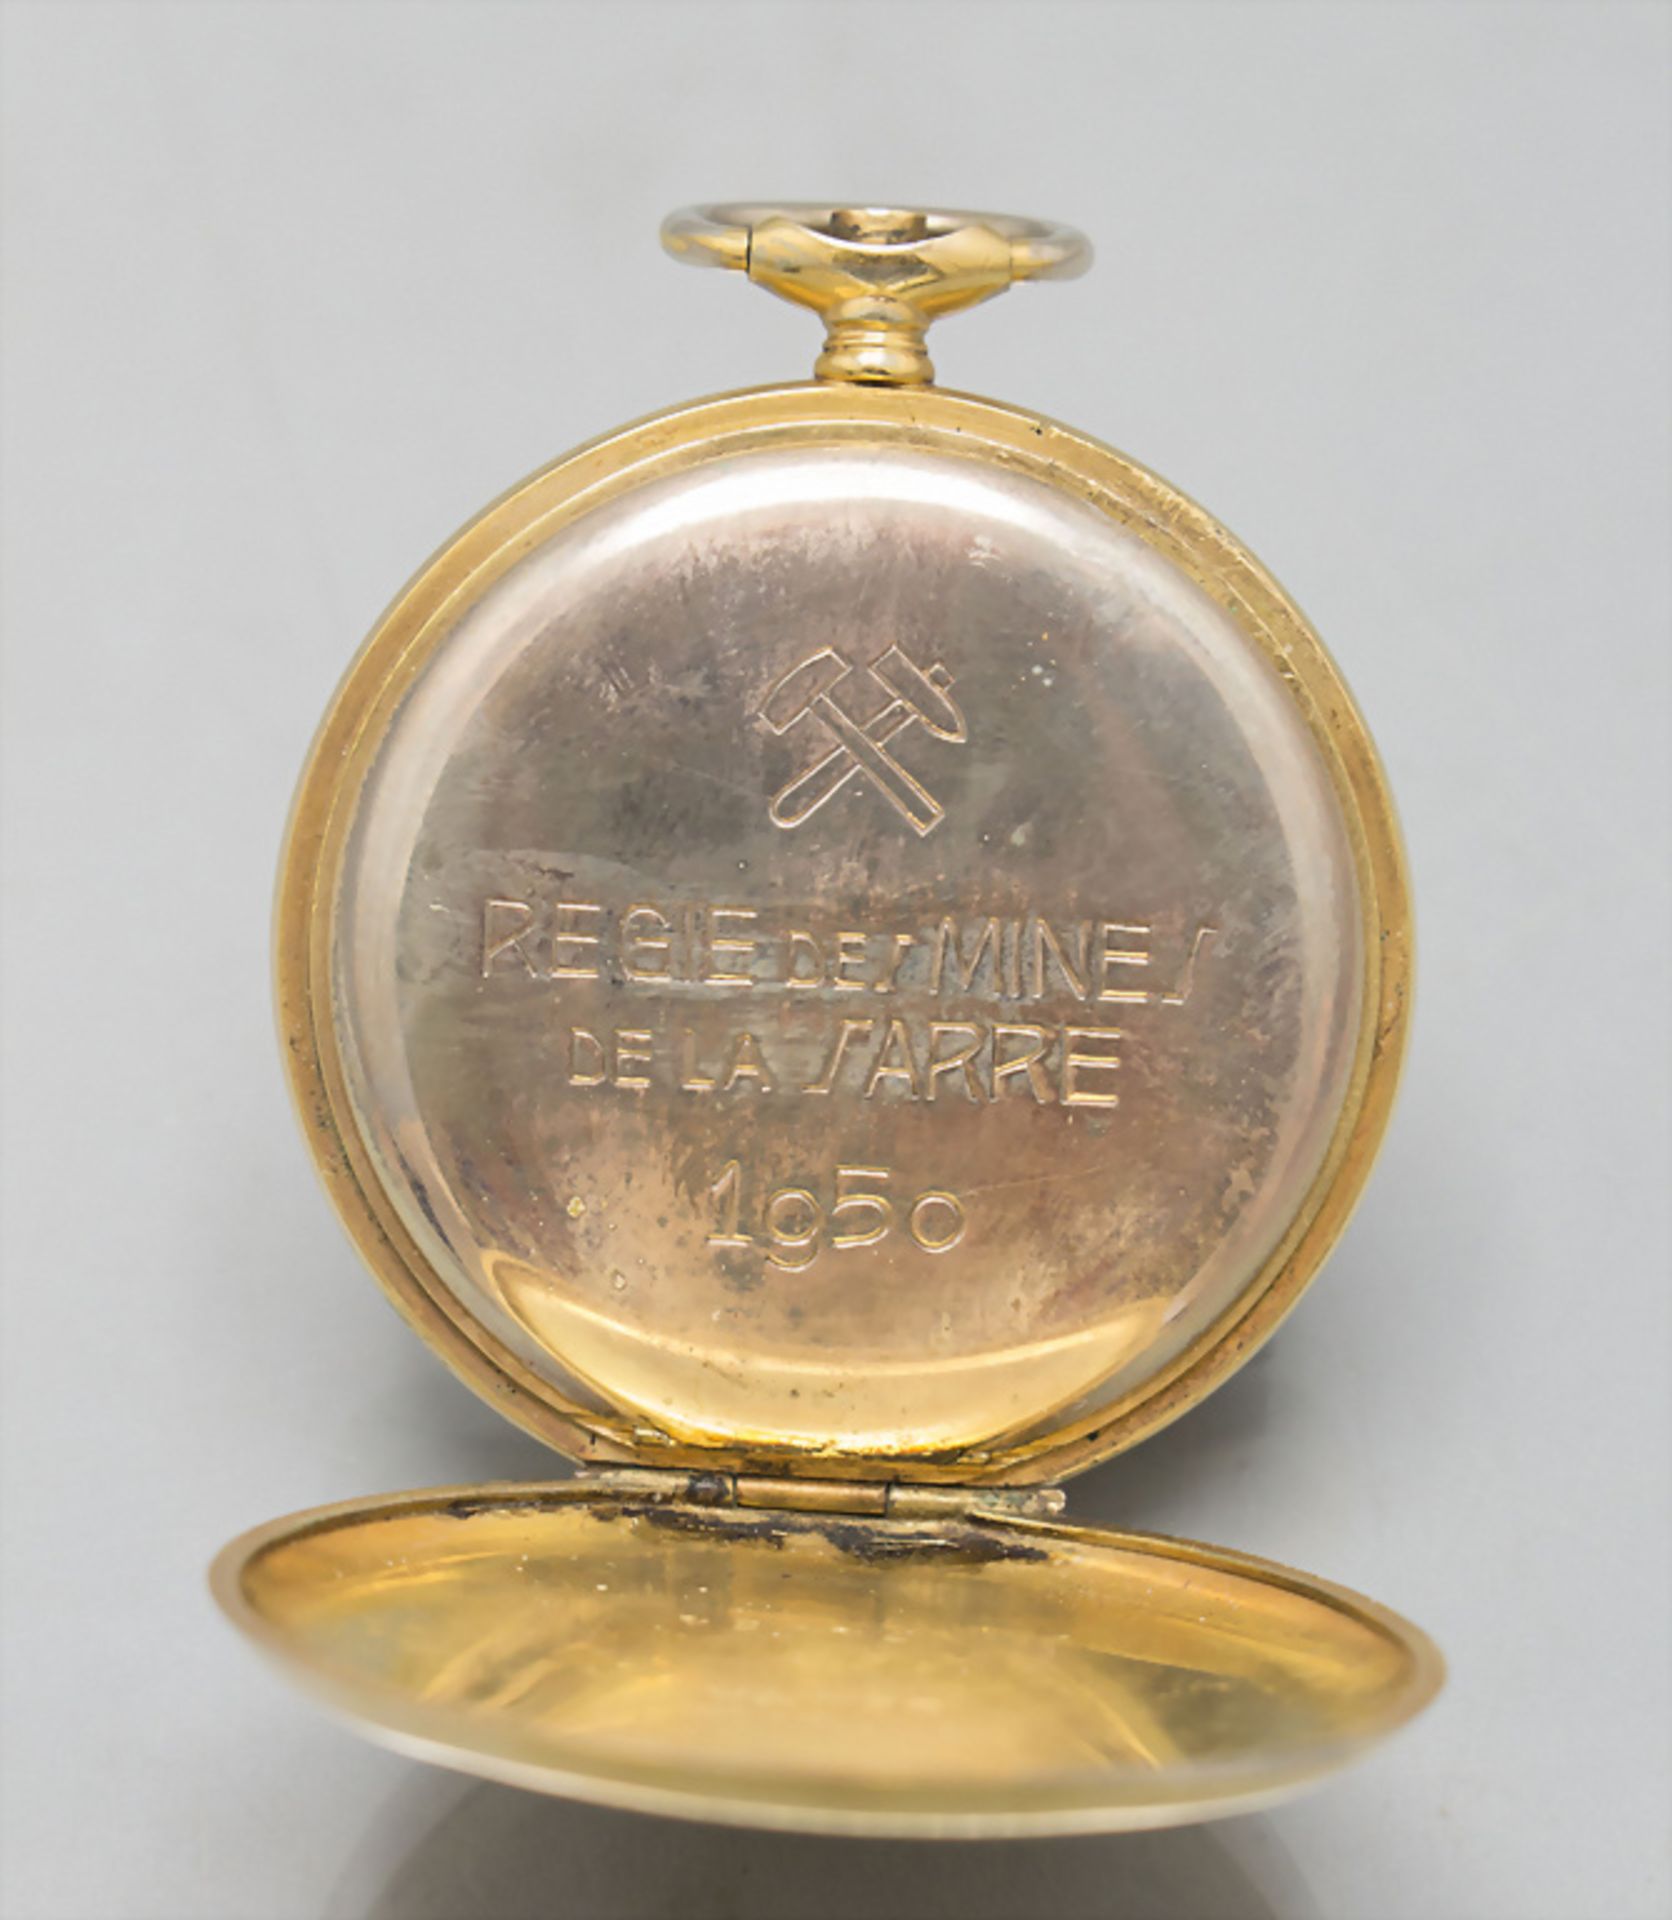 Taschenuhr mit 14 Kt Gold Kette / A pocket watch with a 14 ct gold chain, Zenith, Swiss, um 1950 - Image 5 of 6